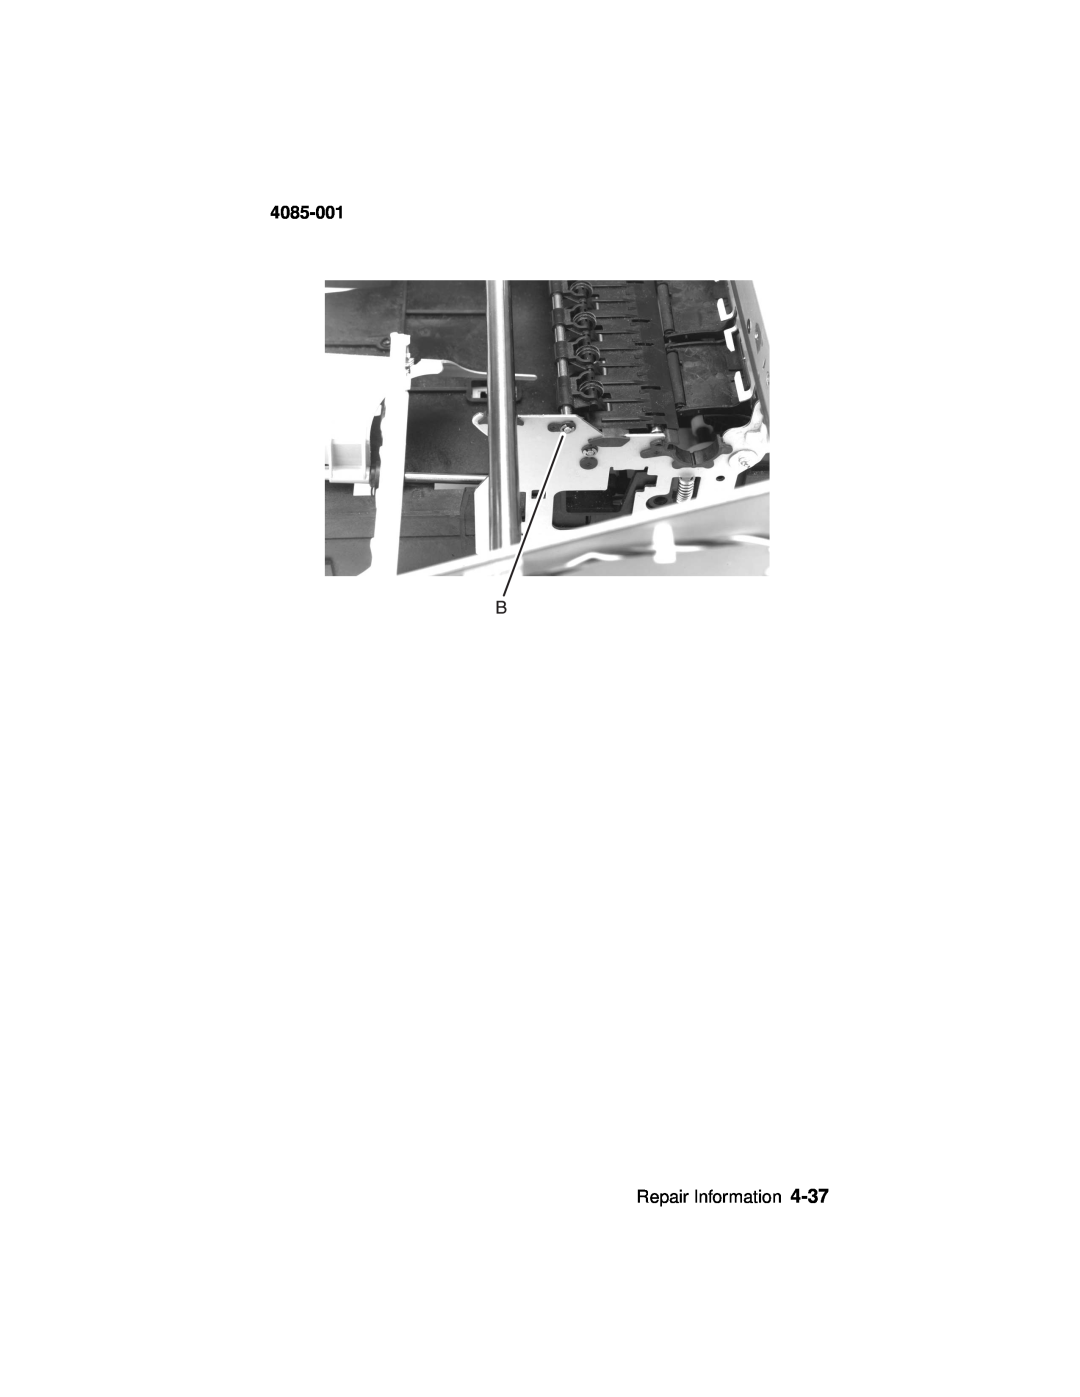 Lexmark Printer, J110 manual 4085-001, Repair Information 